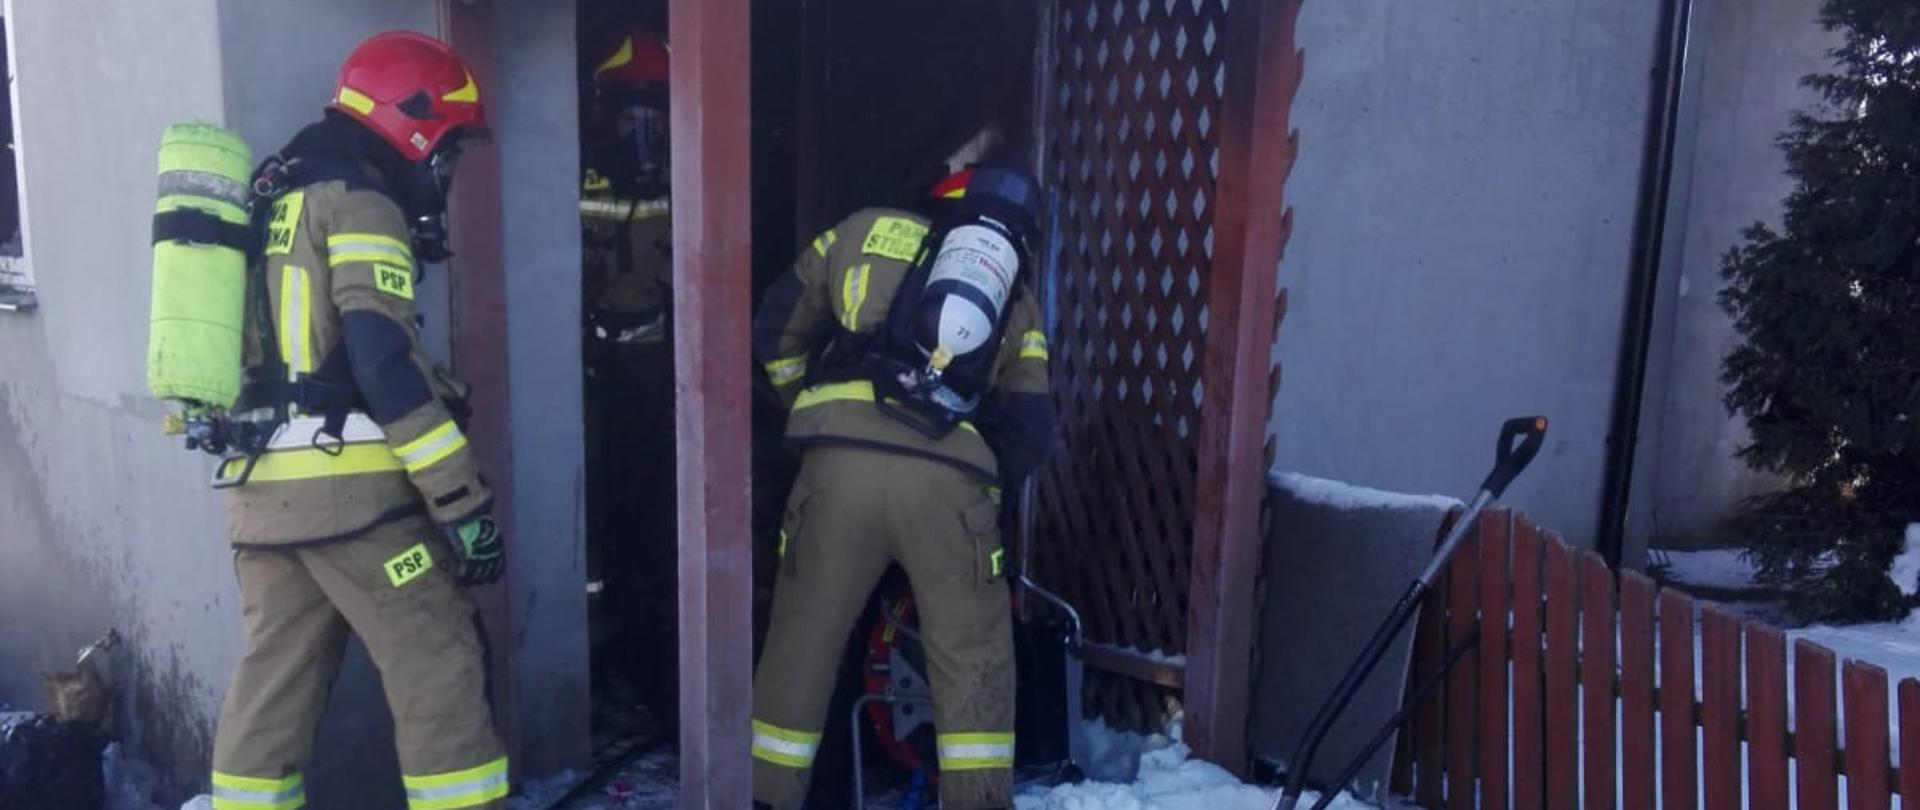 Na zdjęciu znajduje się trzech strażaków, którzy wchodzą do budynku. Przed wejściem do budynku na śniegu widoczne są leżące kartony i segregatory.